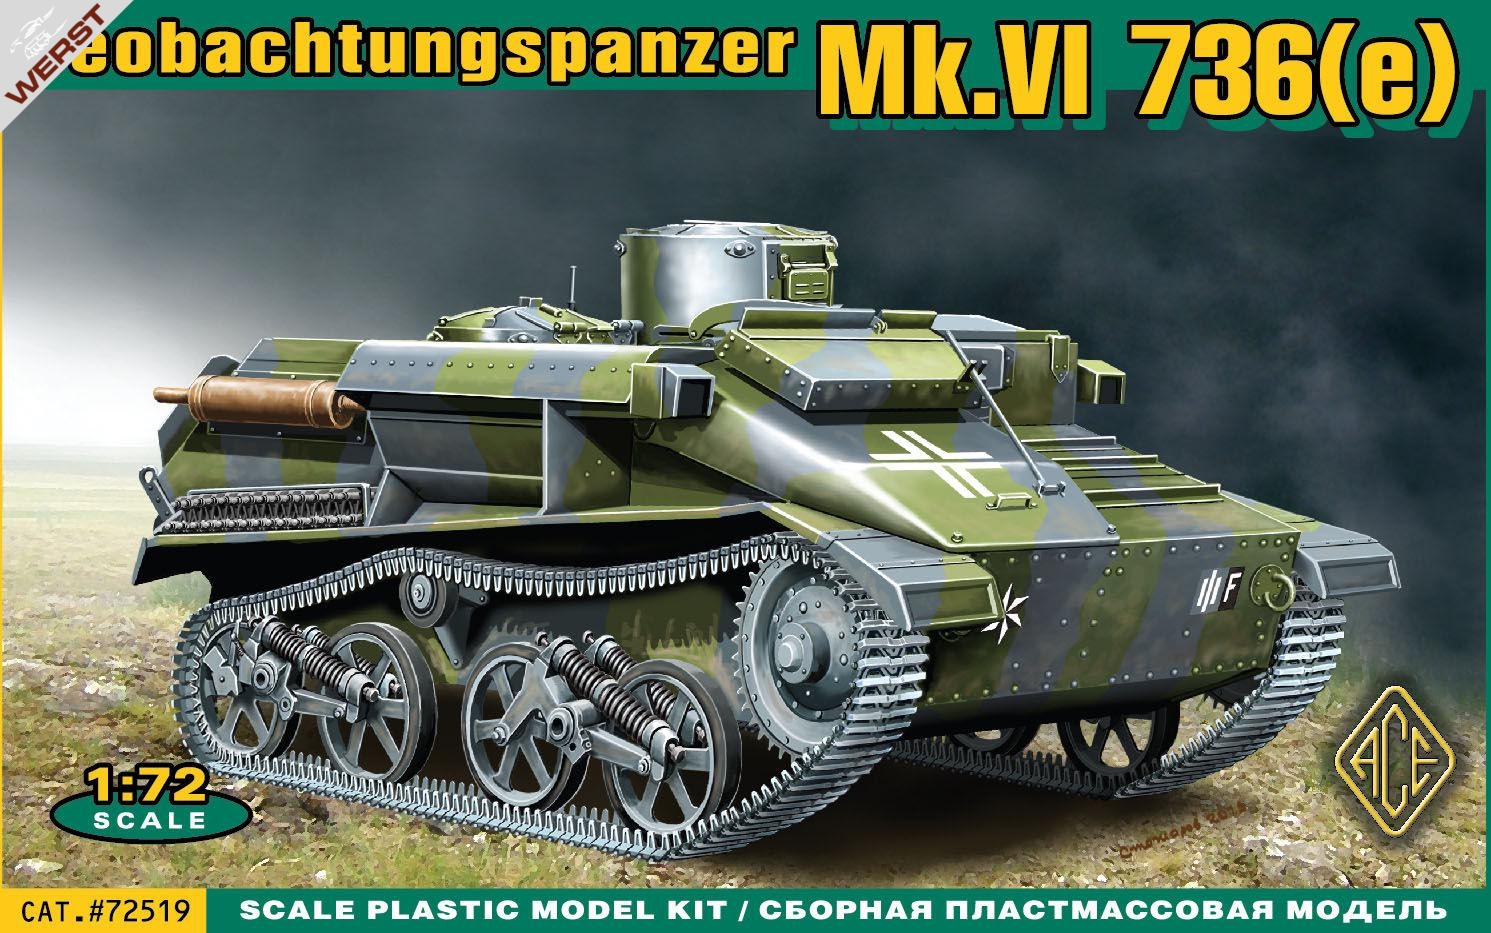 ace-mk-vi-736-e-beobachtungspanz